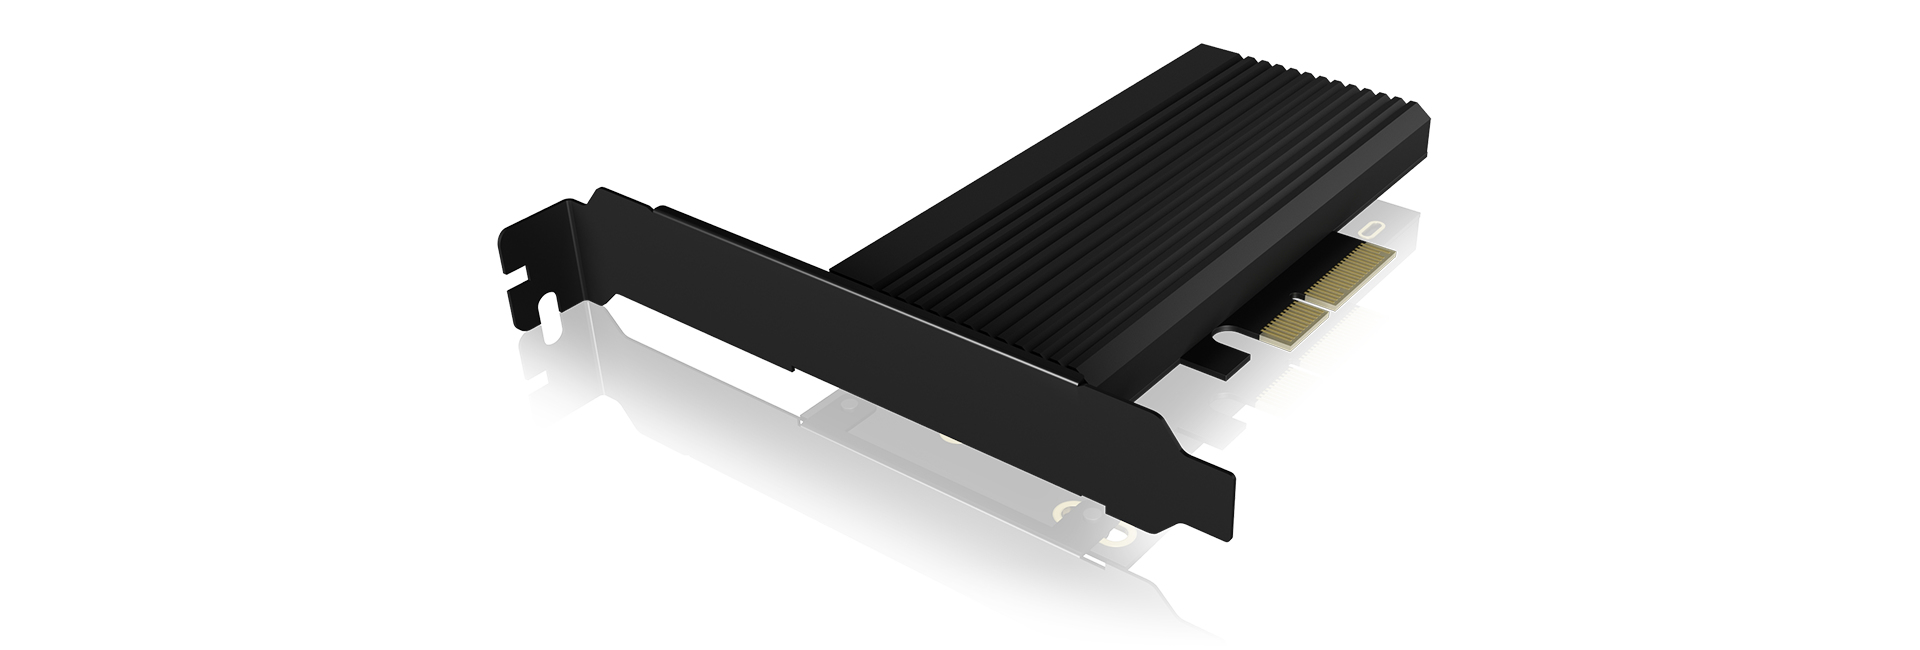 ICY BOX | PCIe Erweiterungskarte mit Kühlkörper, M.2 NVMe SSD zu PCIe 4.0 x4 | black